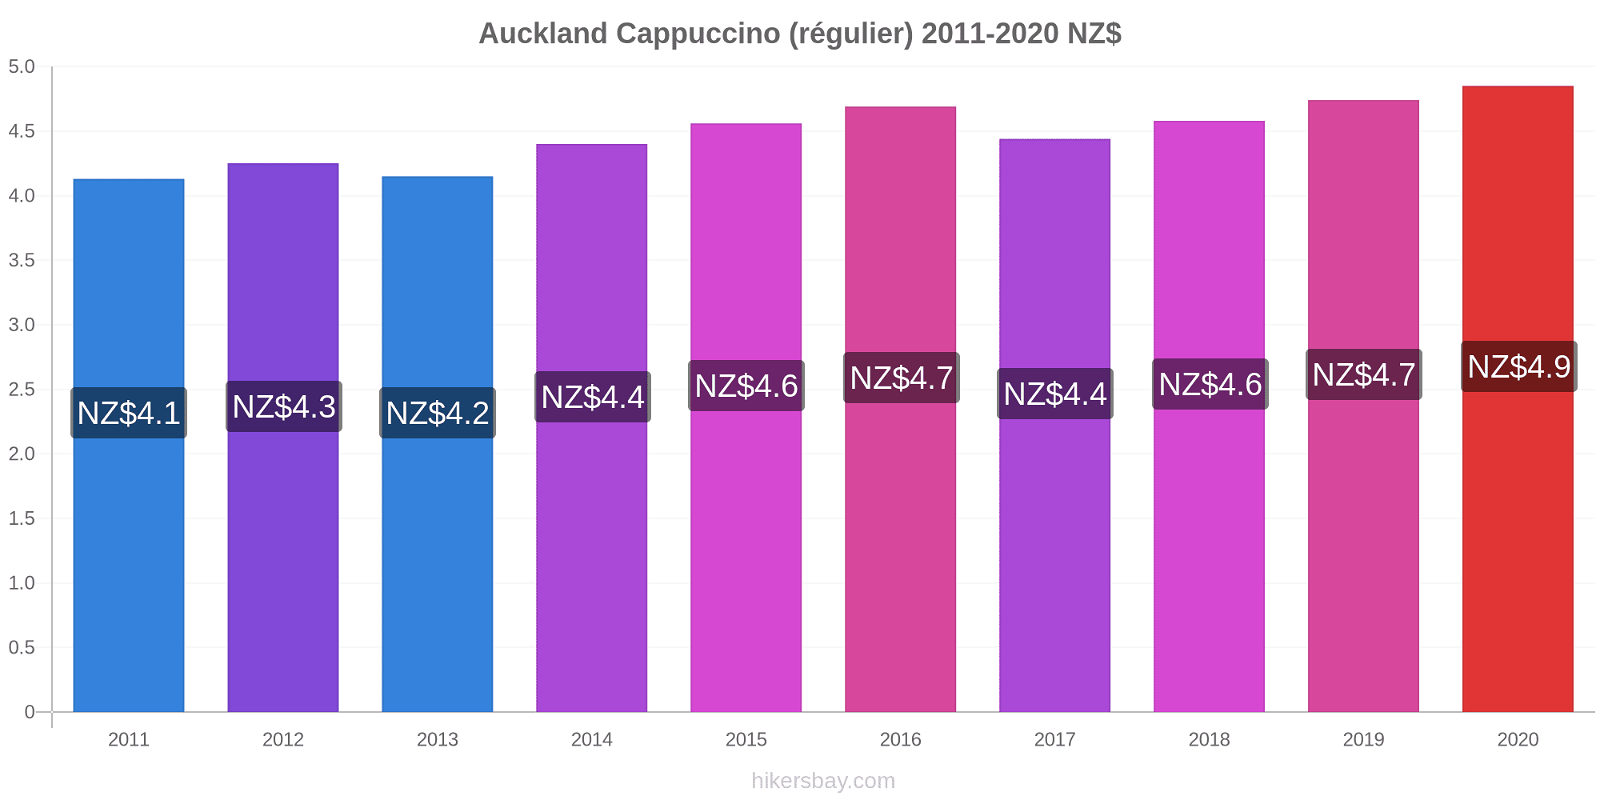 Auckland changements de prix Cappuccino (régulier) hikersbay.com